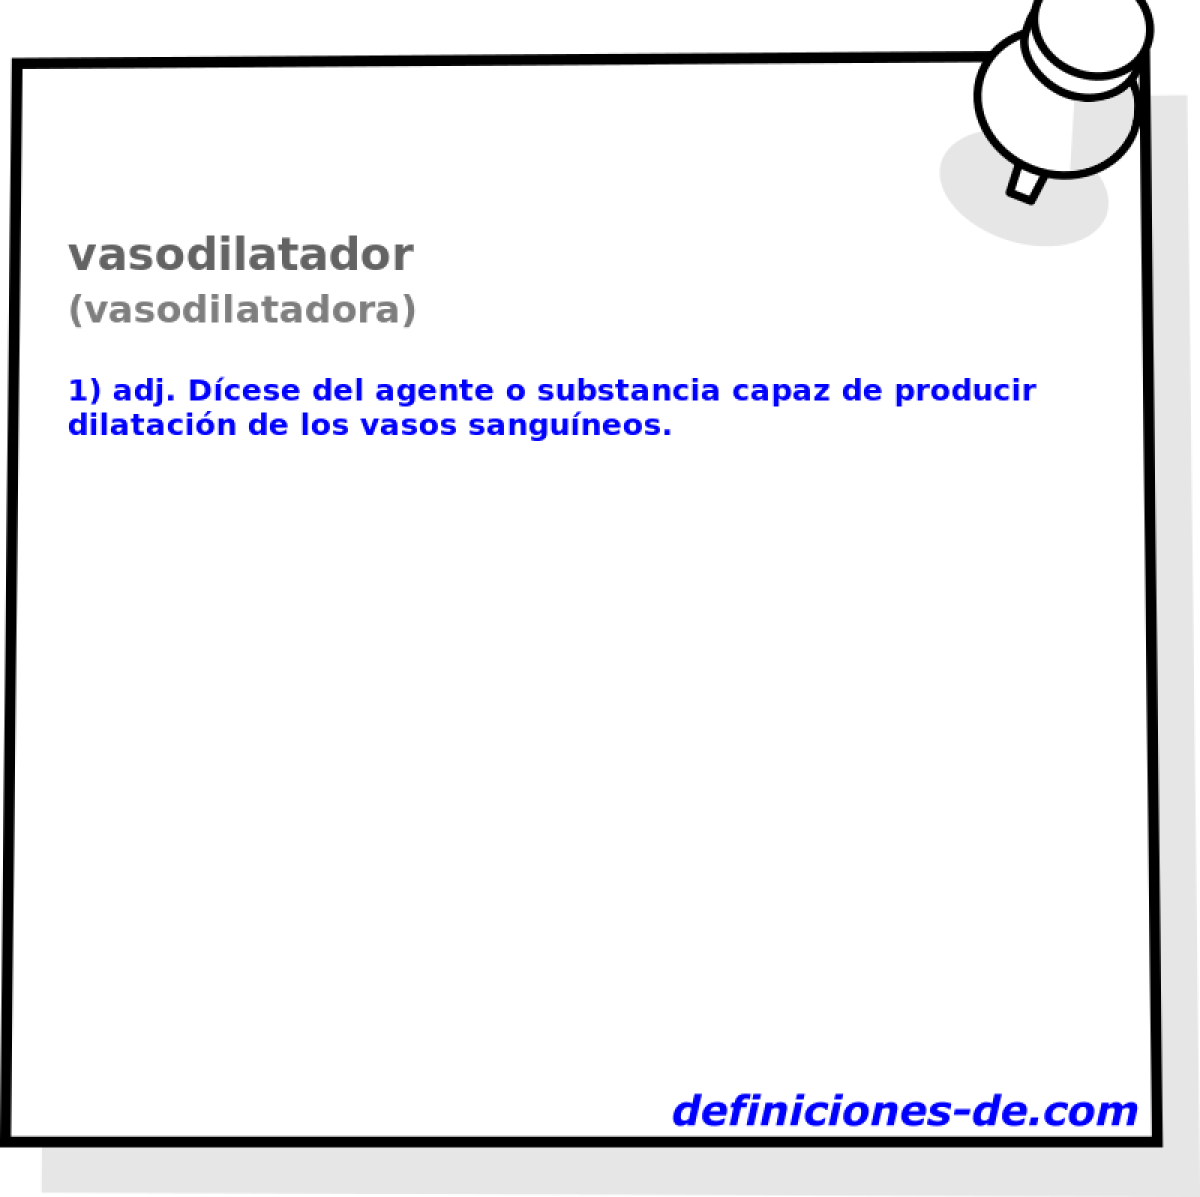 vasodilatador (vasodilatadora)